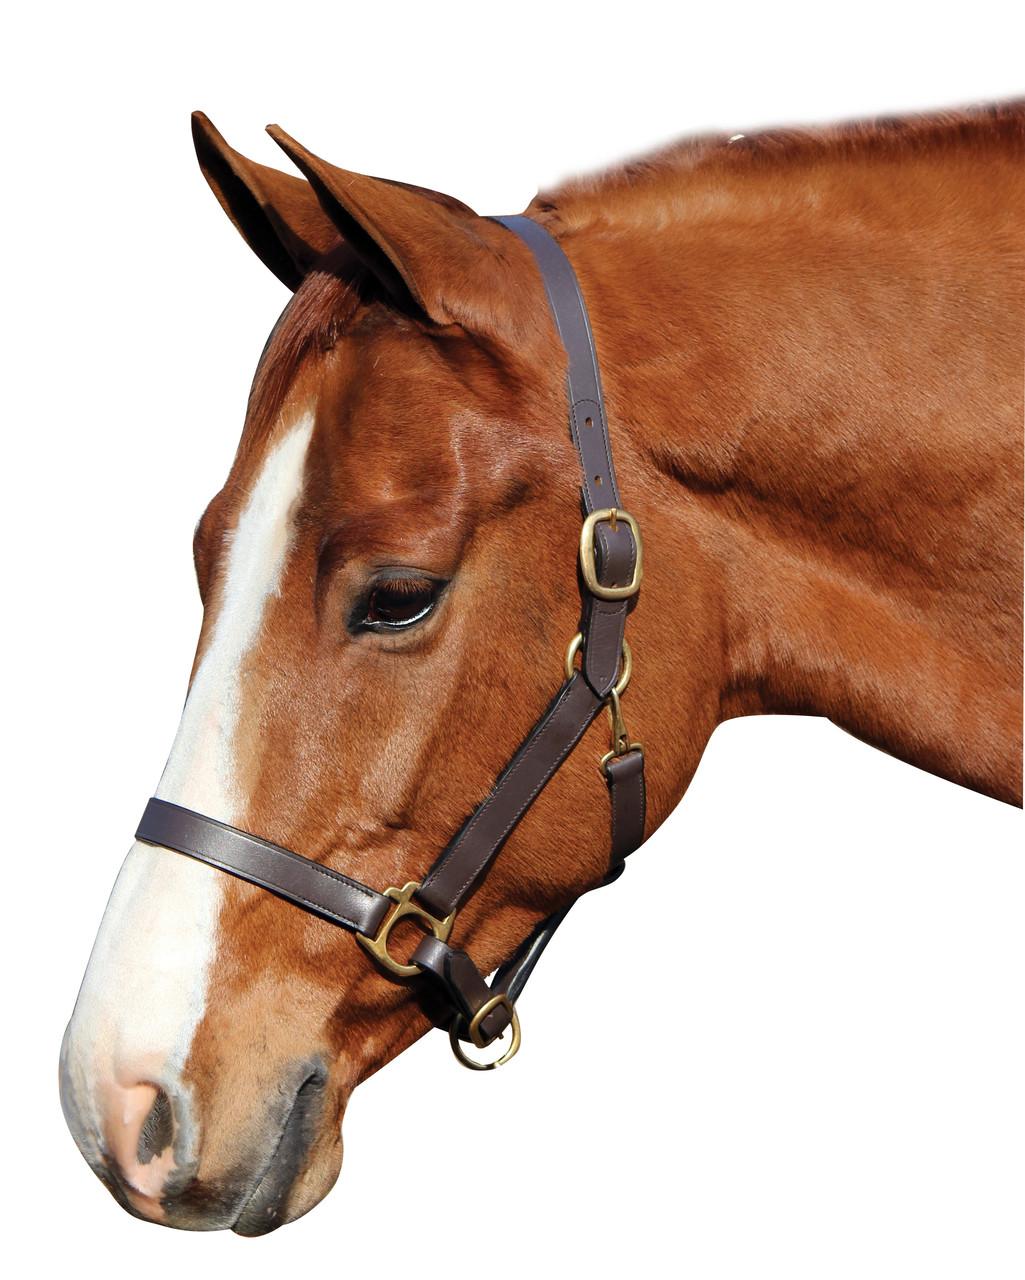 Недоуздок для лошади: обзор и инструкции по изготовлению